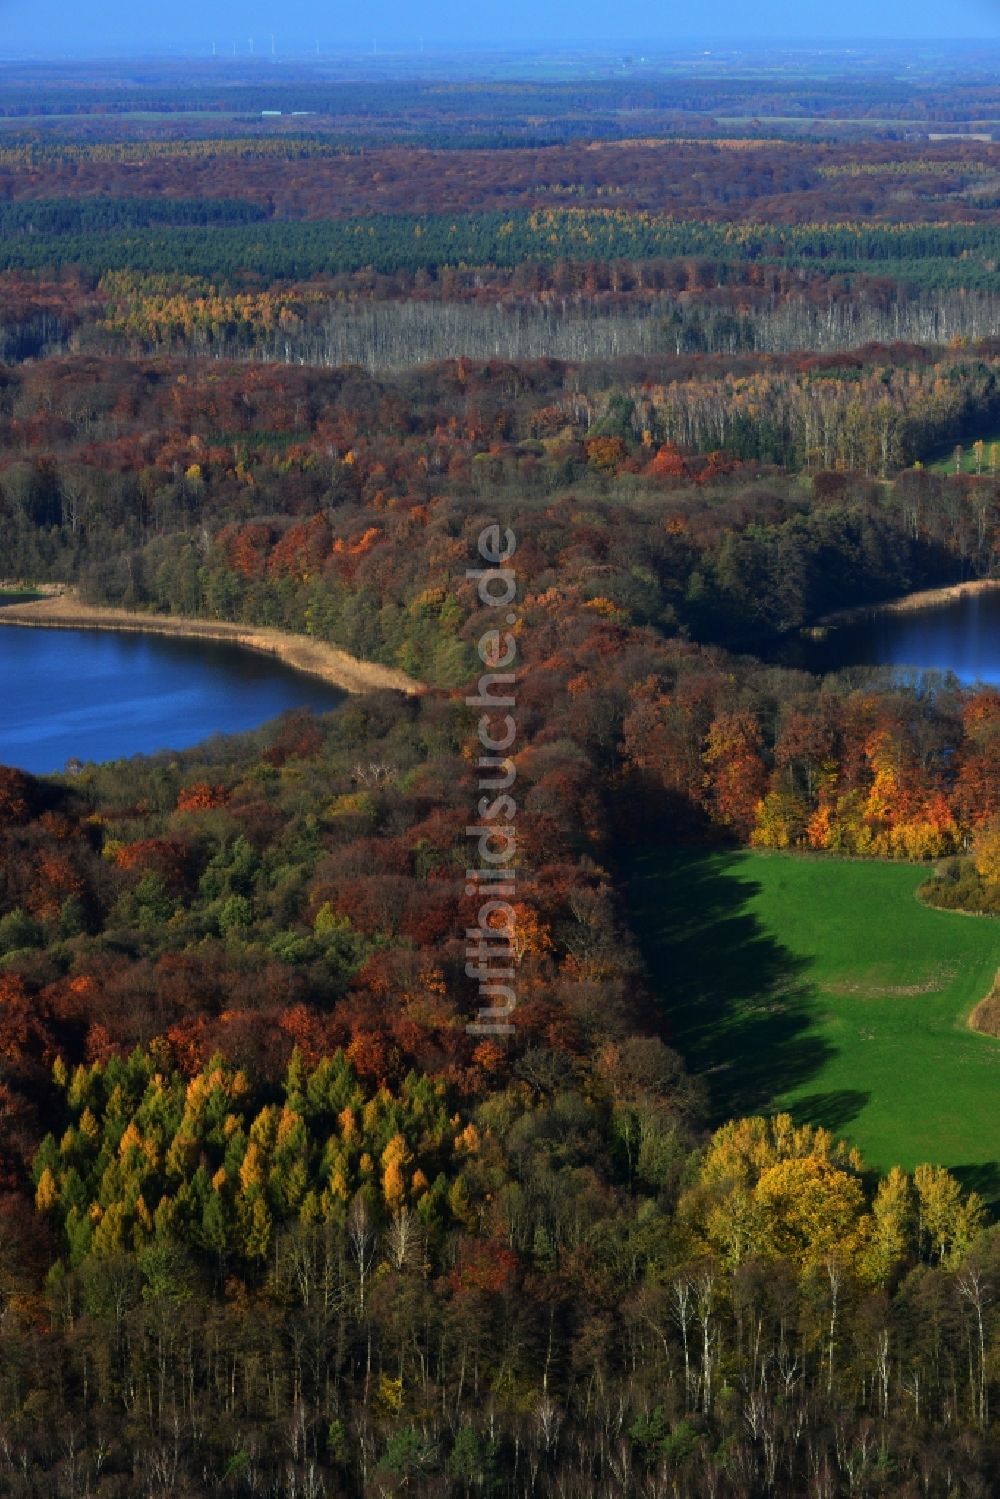 Luftaufnahme Friedrichswalde - Herbstlandschaft am Ufer Großer und Kleiner Präßnicksee bei Friedrichswalde im Bundesland Brandenburg